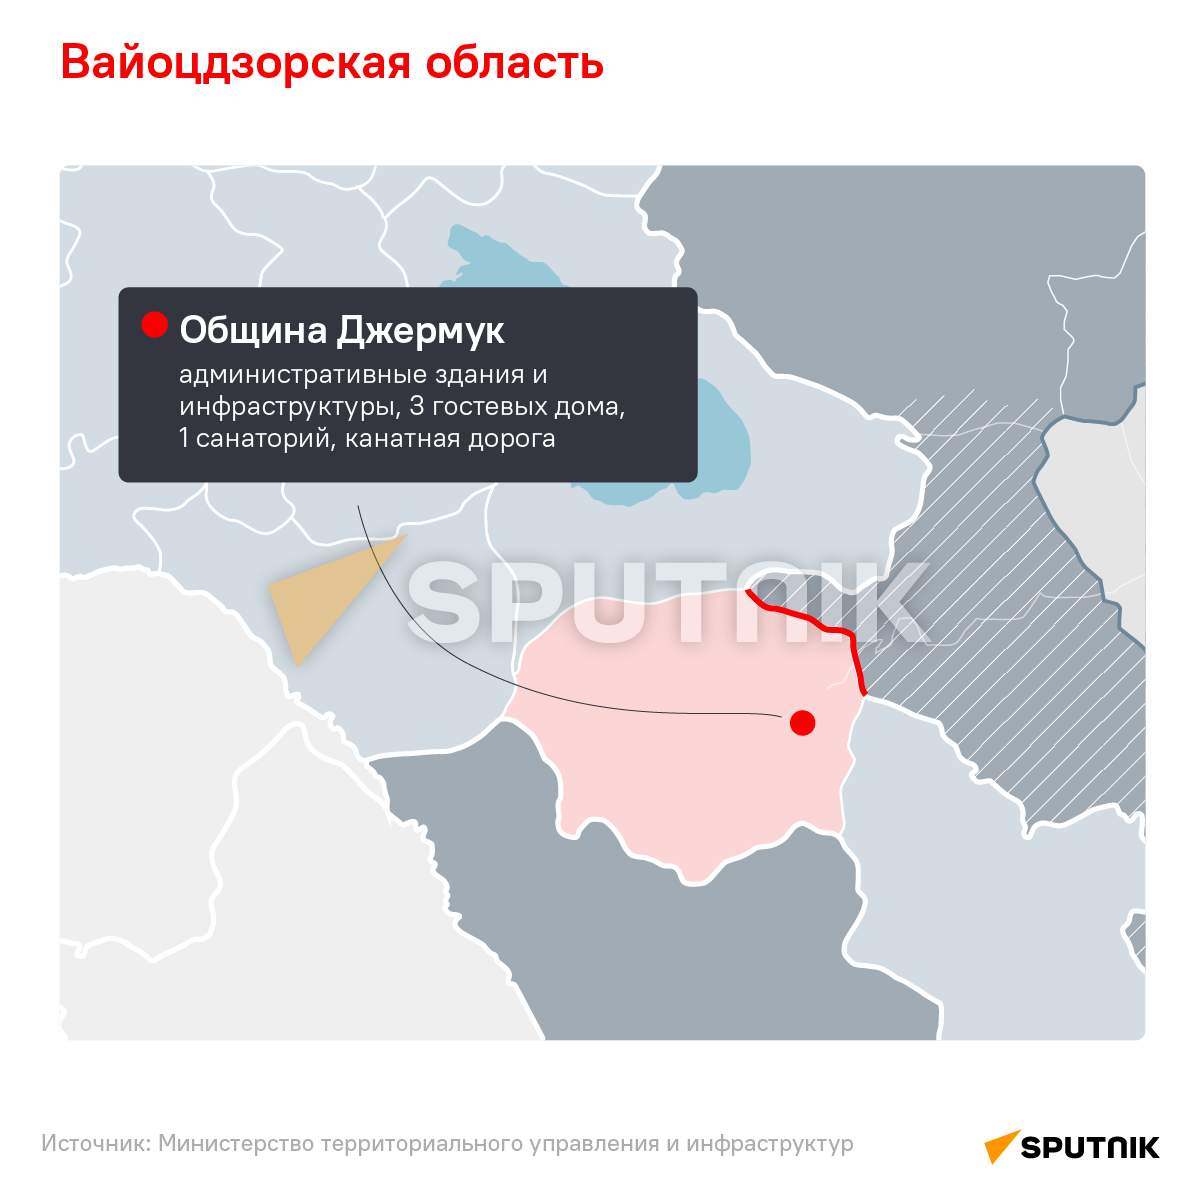 Последствия азербайджанской агрессии - Sputnik Армения